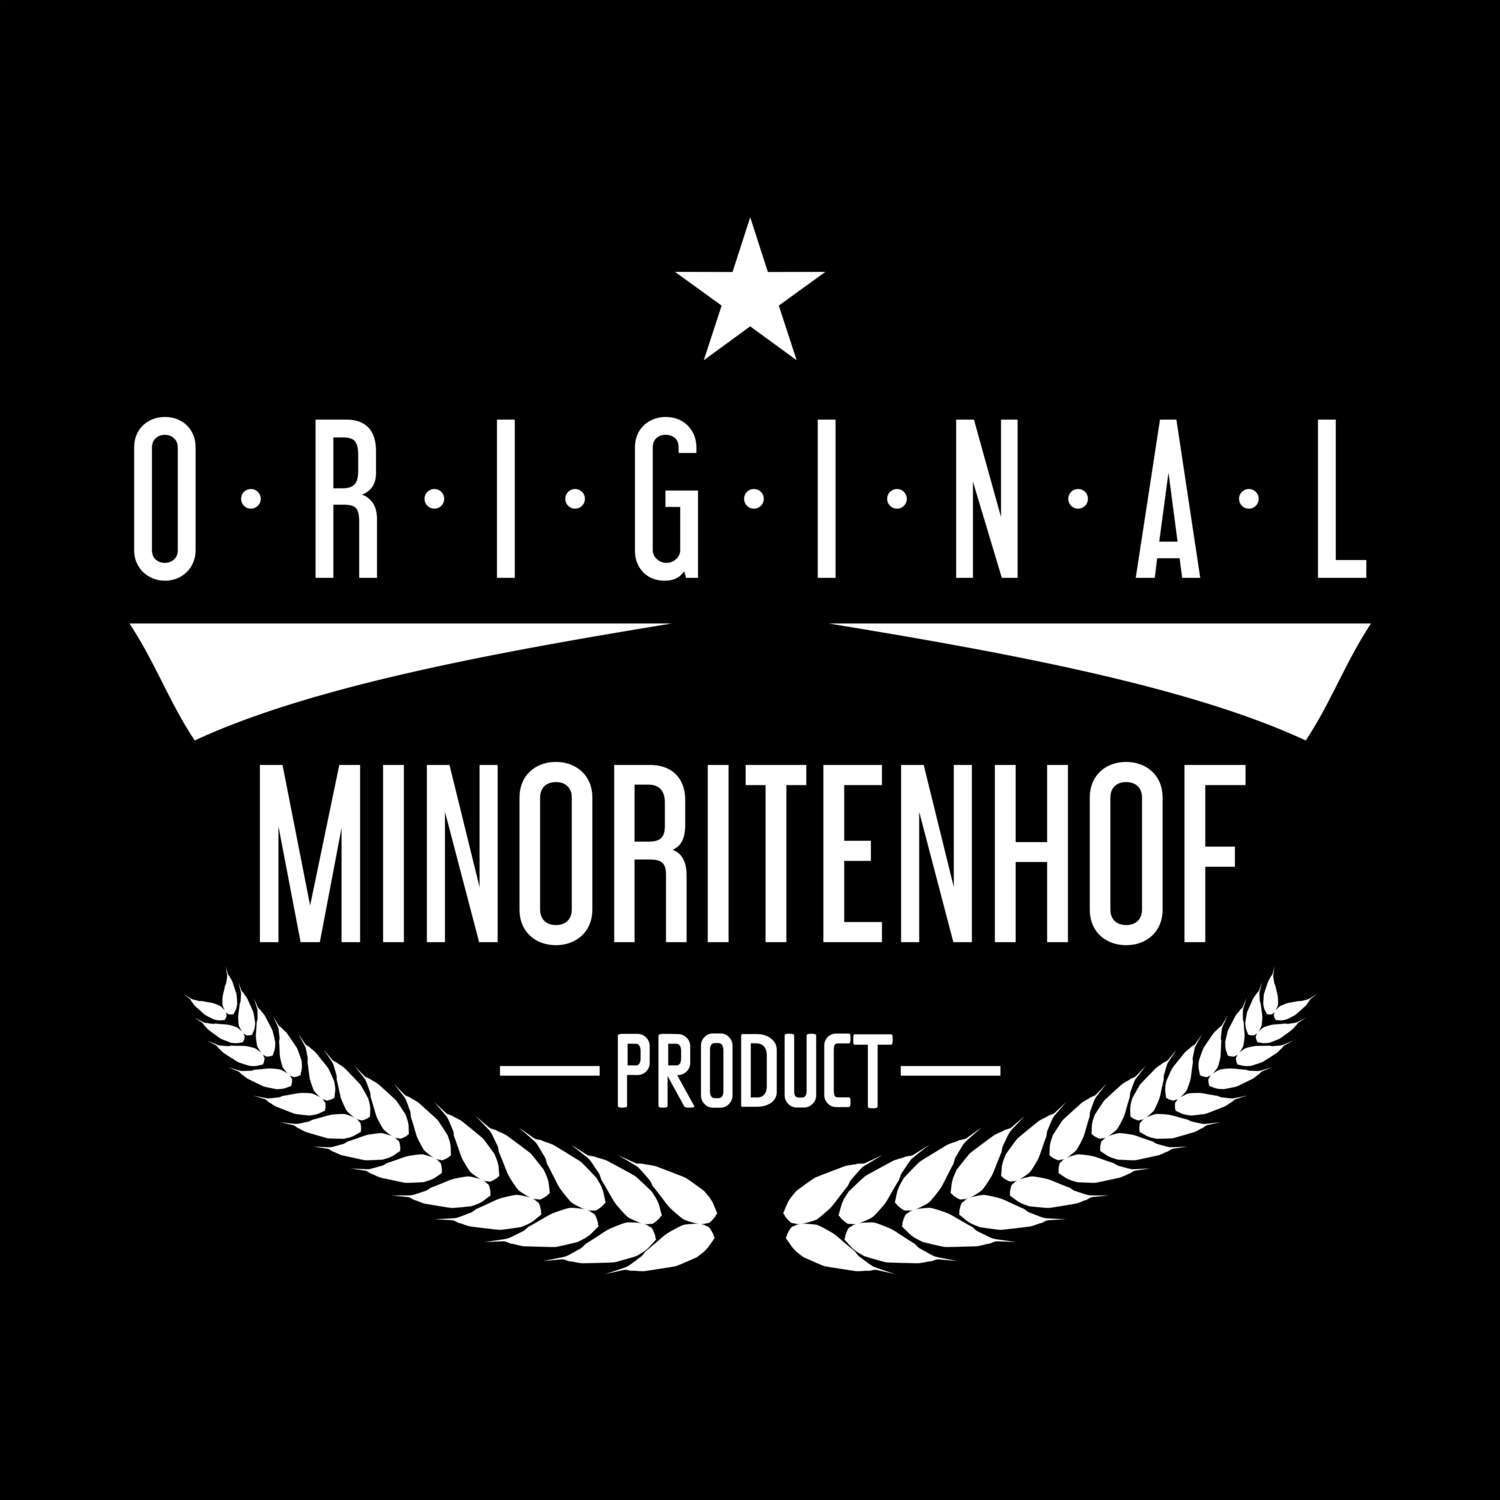 Minoritenhof T-Shirt »Original Product«